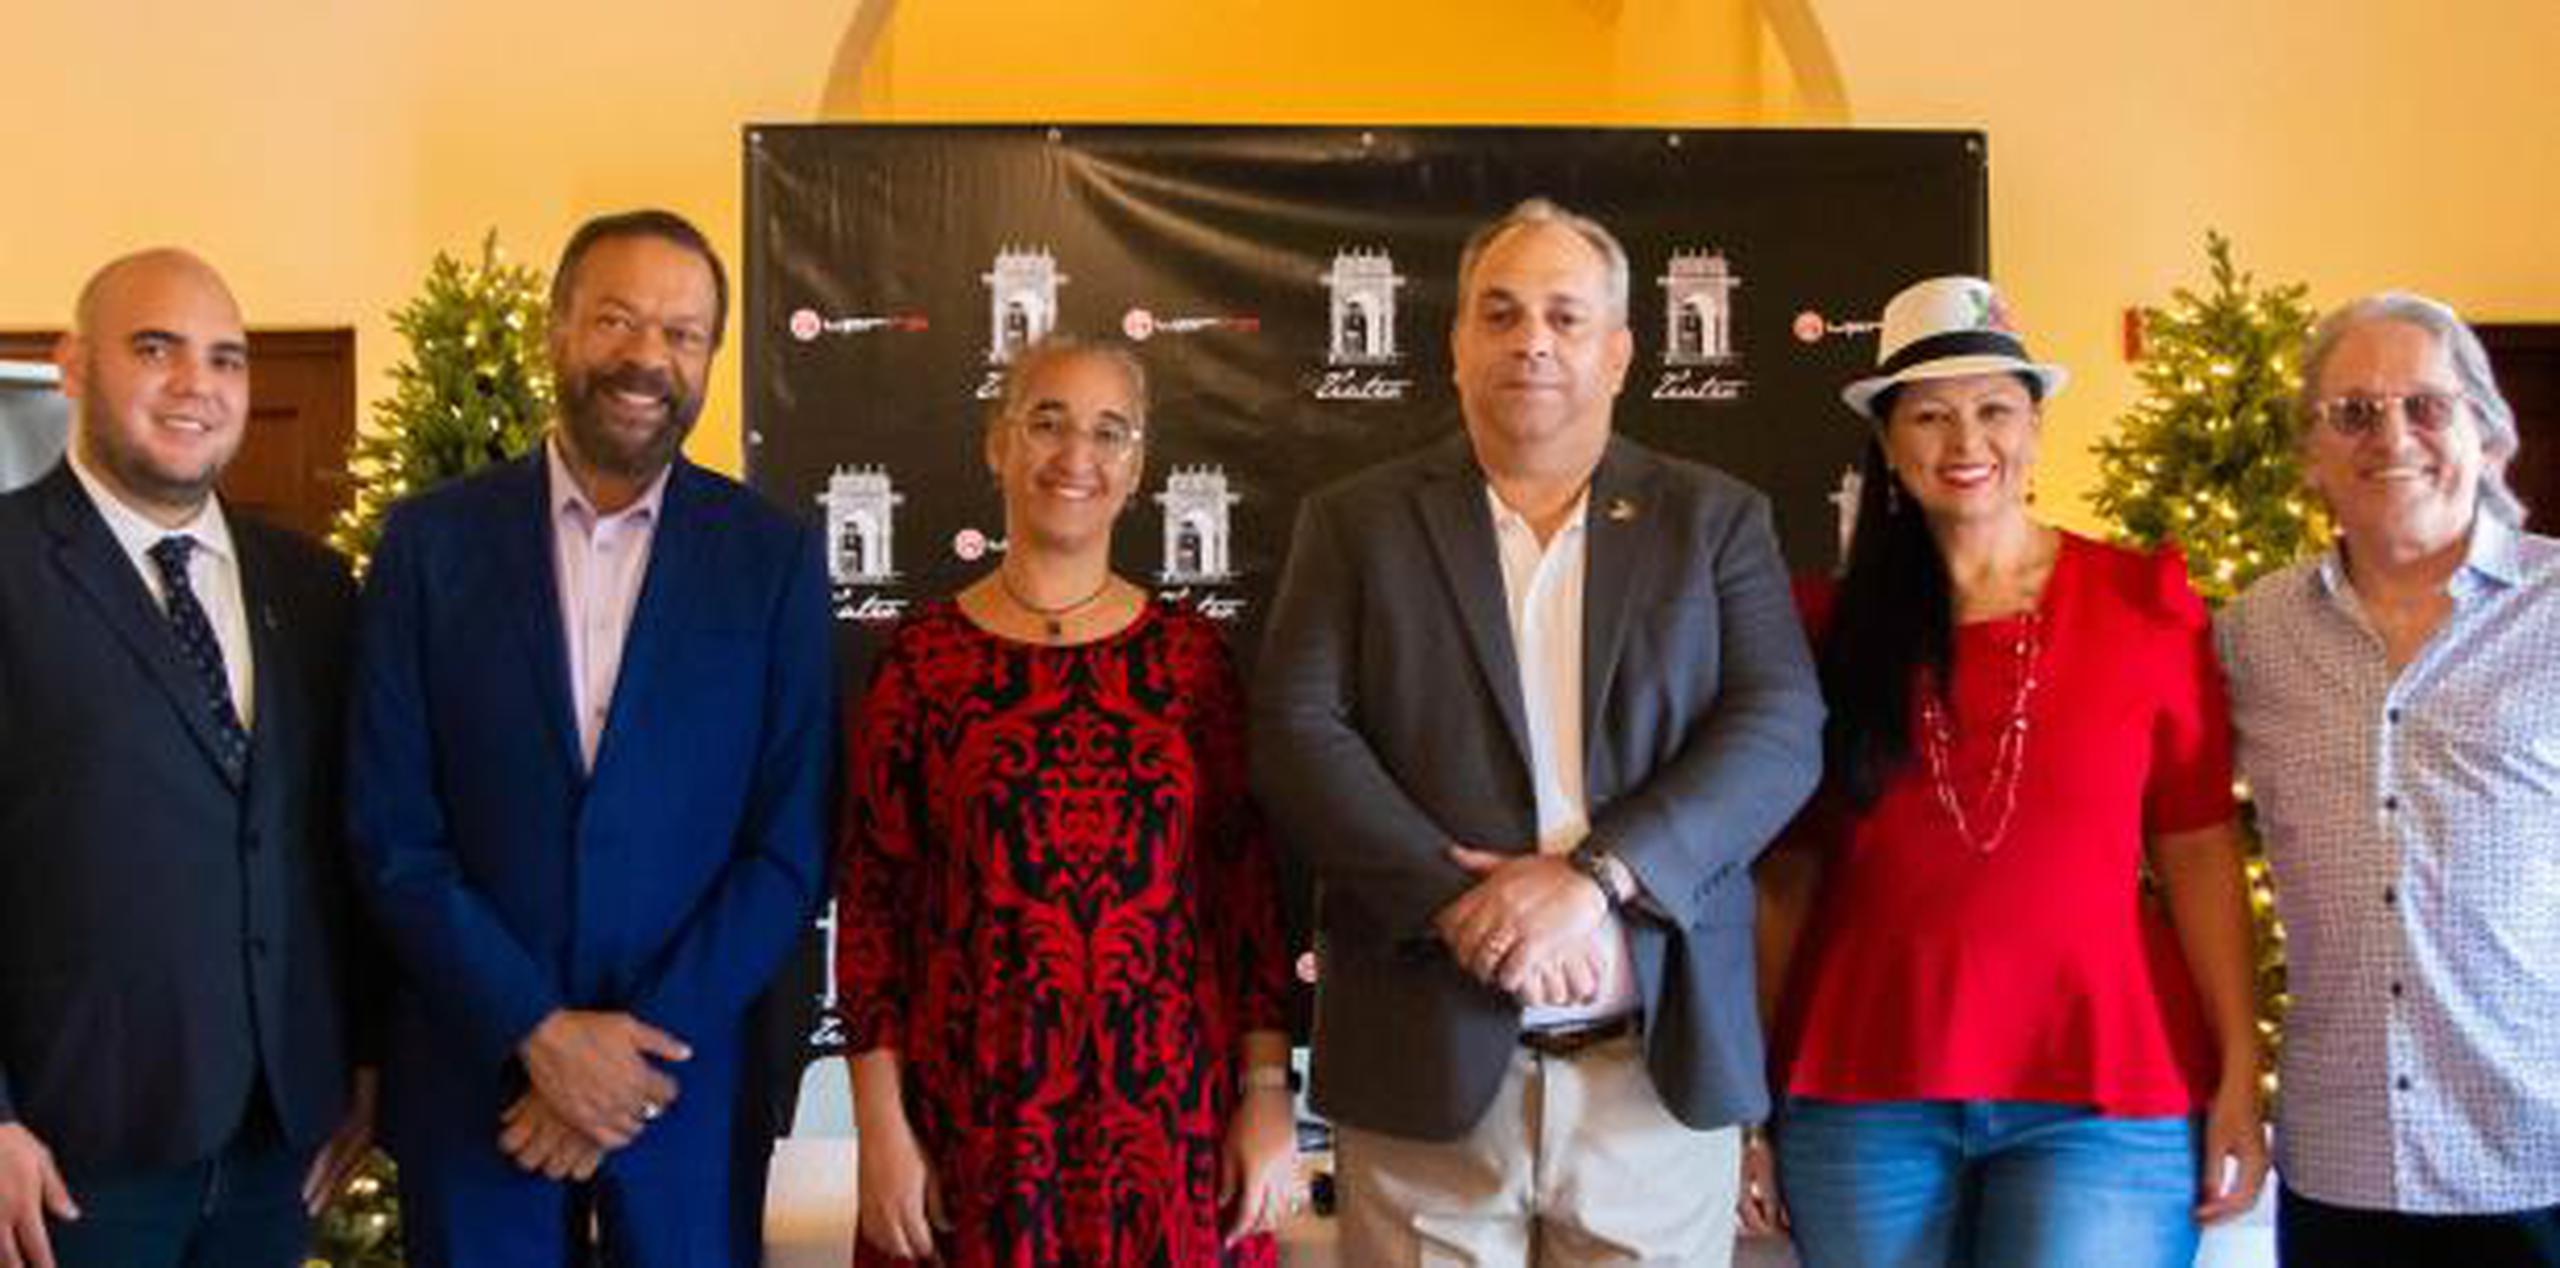 Rafael Chaves Otero, director ejecutivo del Teatro (extrema izquierda), presentó el calendario junto a parte de los artistas que participarán. (Suministrada)